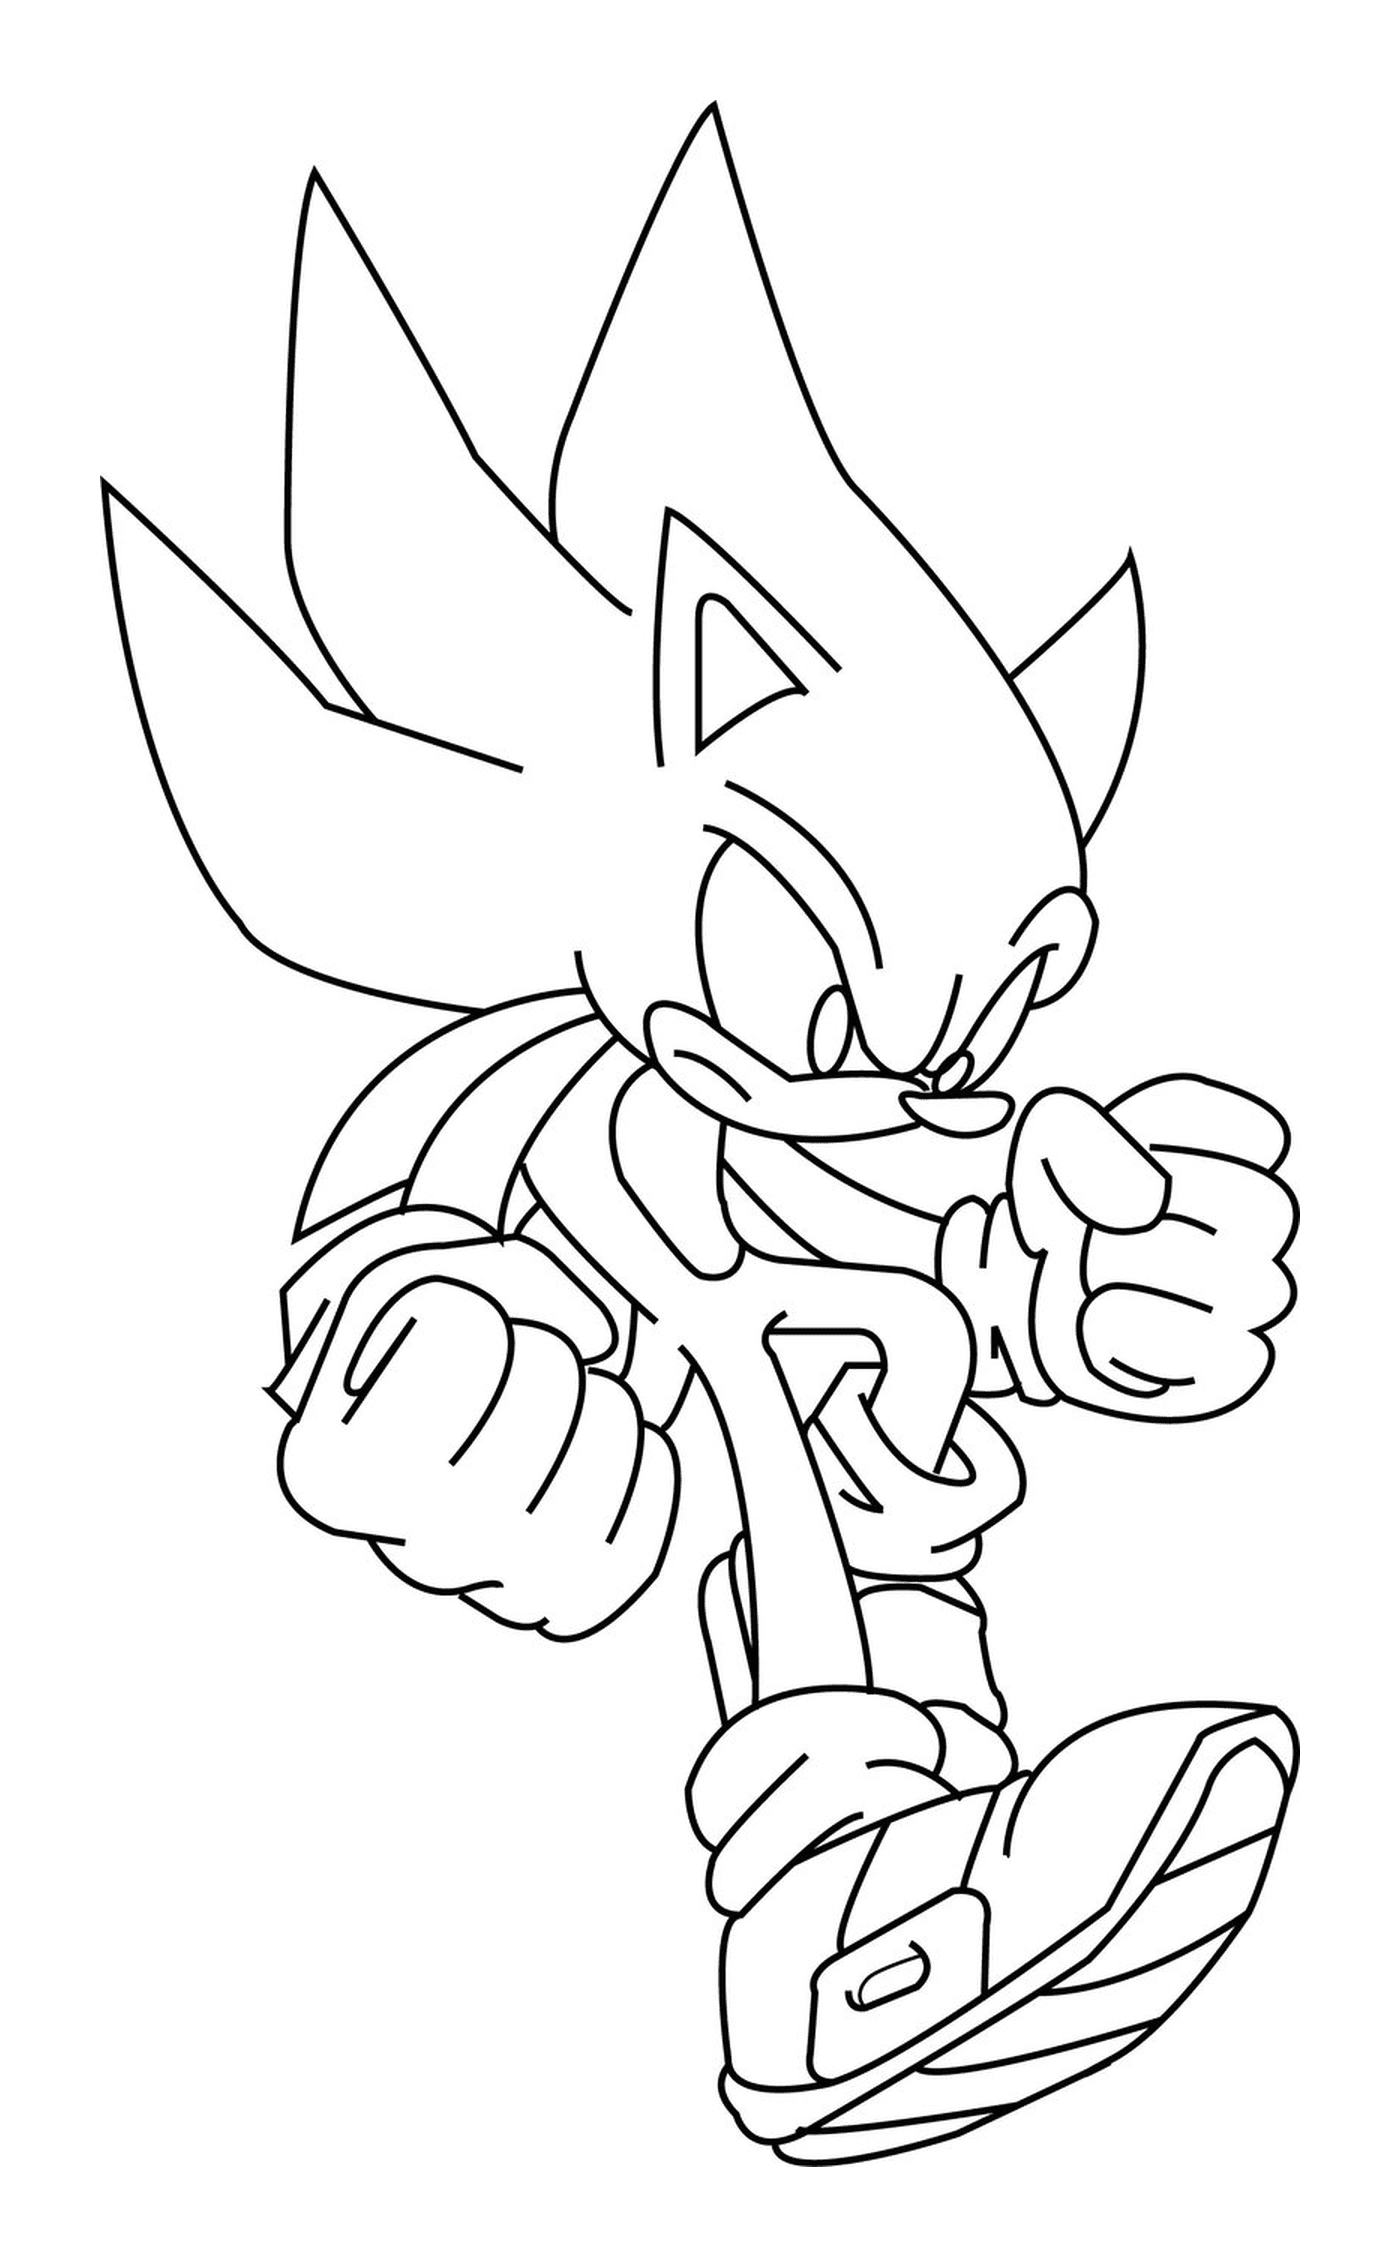  Potente y rápido Sonic 